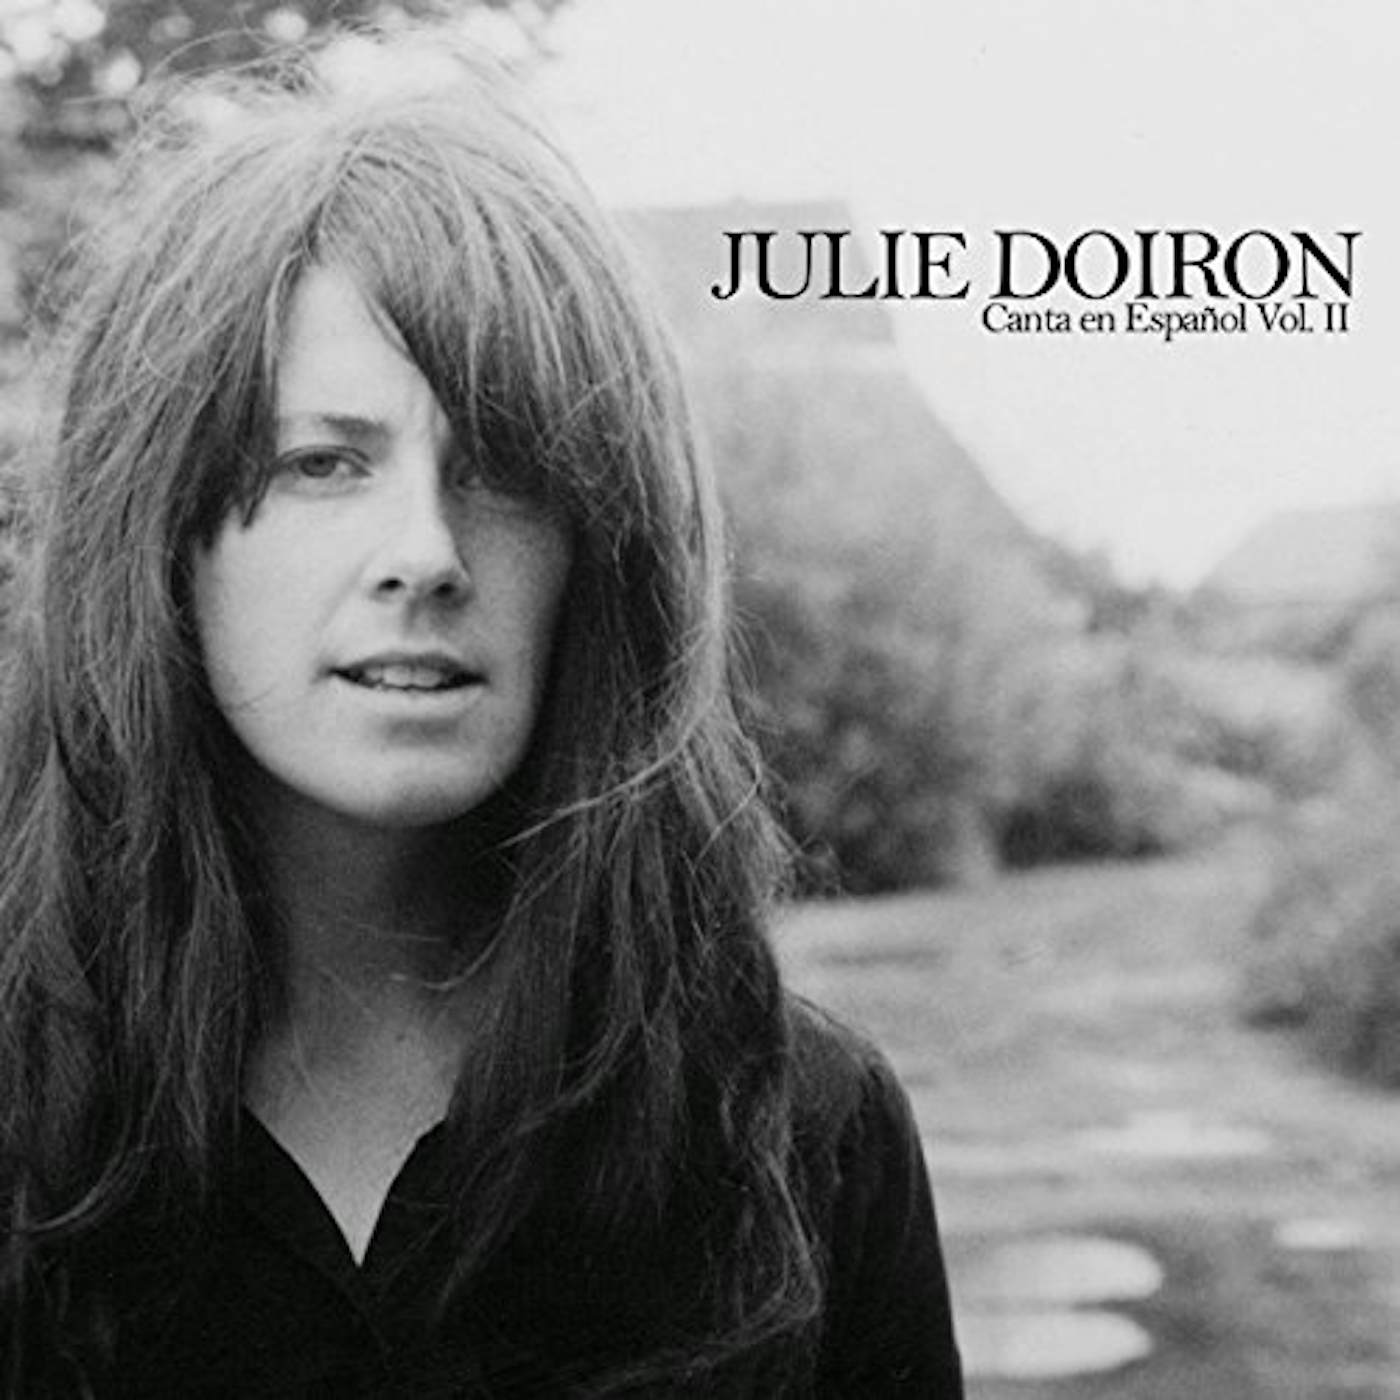 Julie Doiron CANTA EN ESPANOL VOL. II Vinyl Record